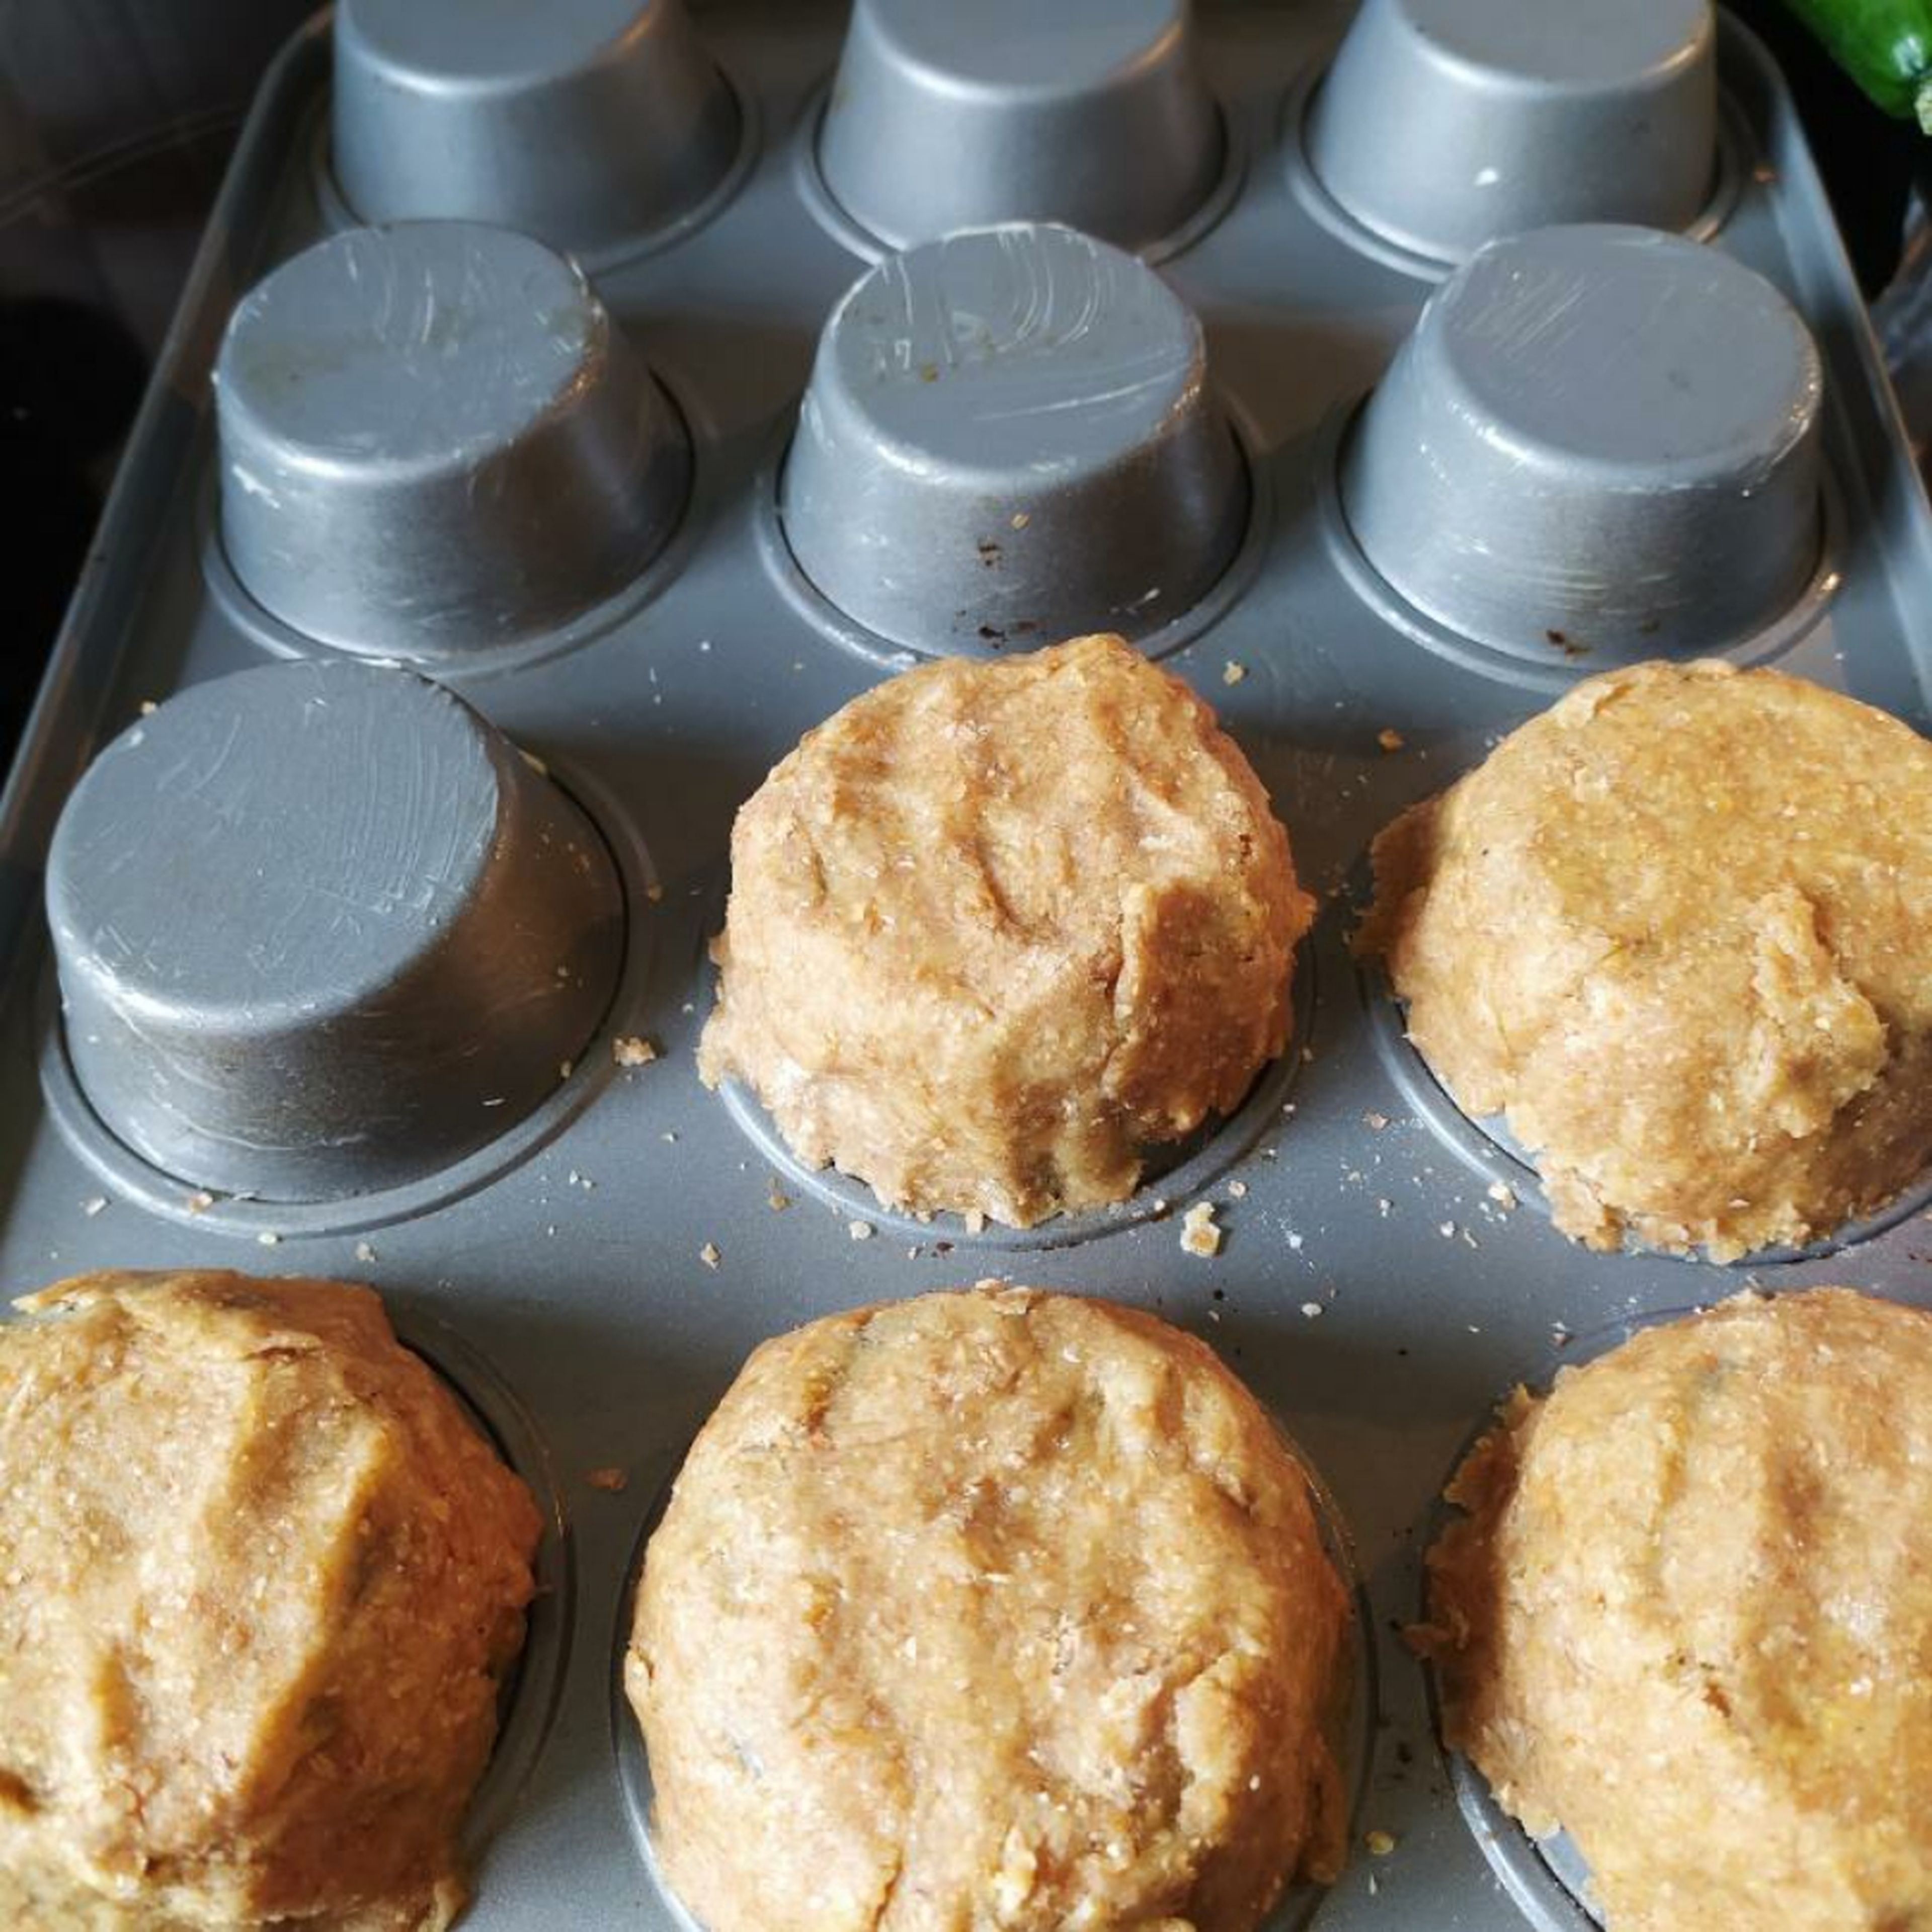 Das Muffinblech umdrehen und einfetten. Den Teig ausrollen und um die Muffinformen legen. Das Blech in den Ofen schieben und diesen auf 200° einschalten. Teig 15 Minuten vorbacken.